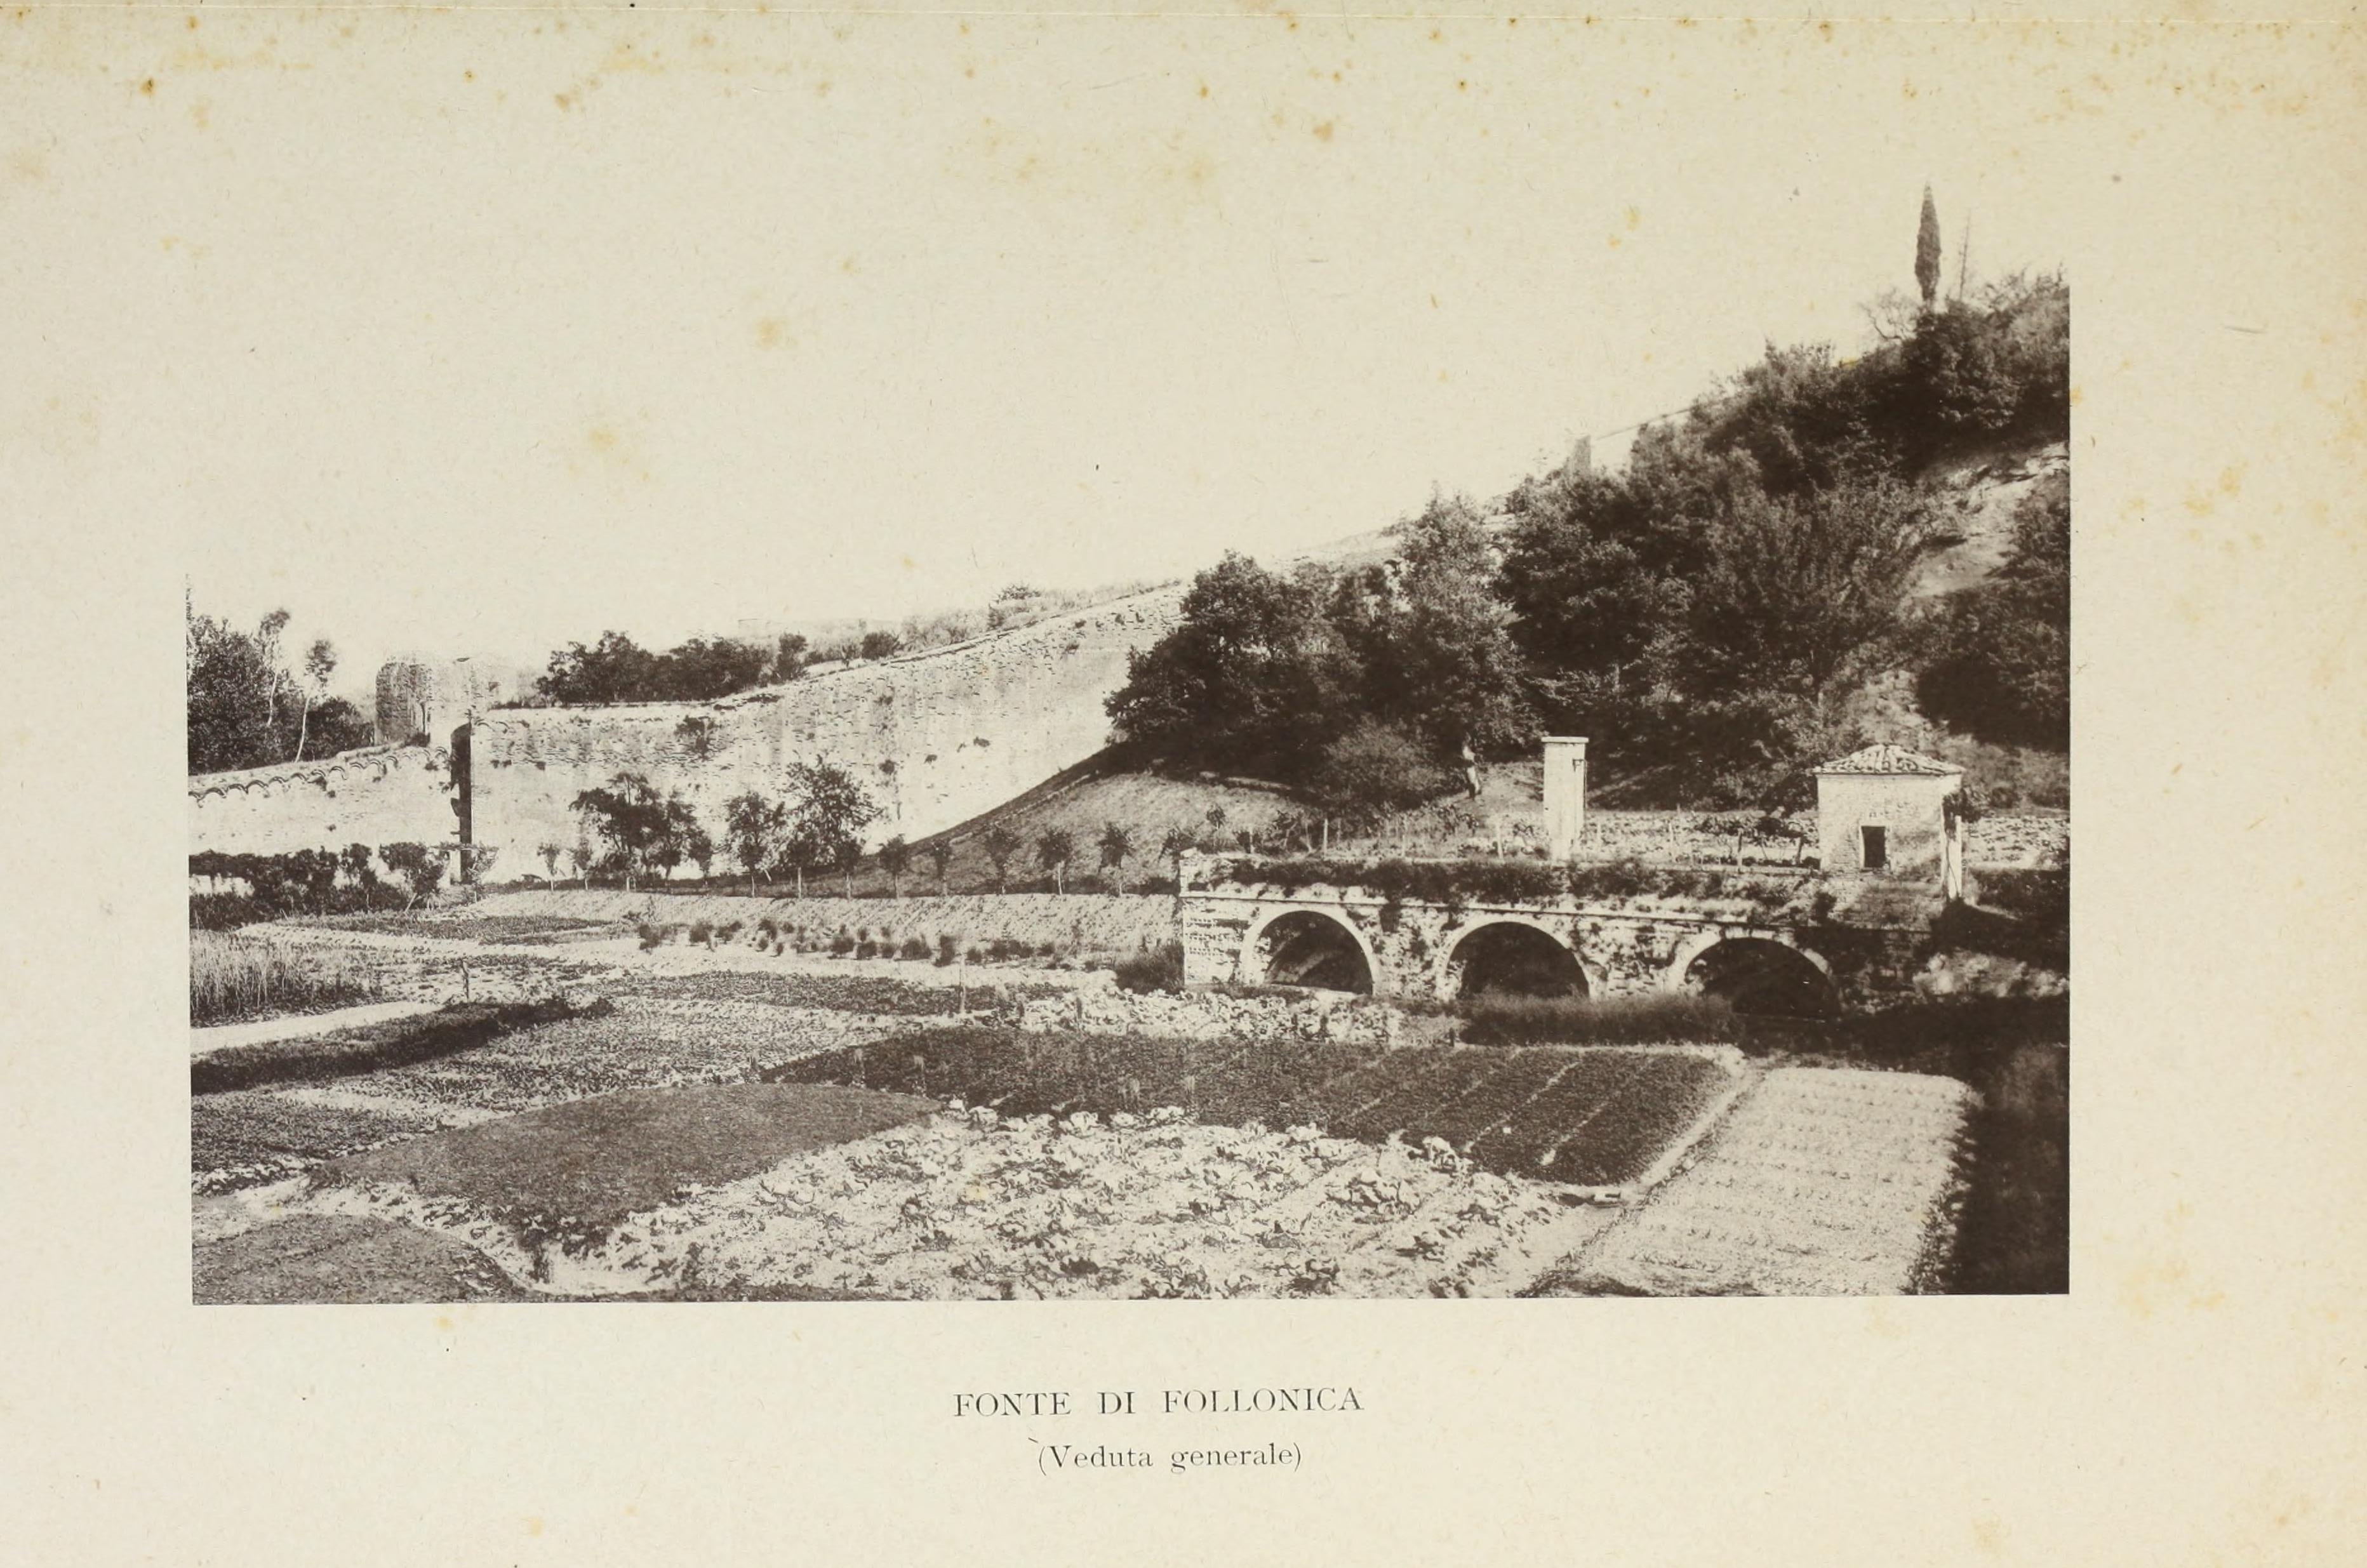 Le fonti di Siena e i loro aquedotti, note storiche dalle origini fino al MDLV (1906) (14590618640).jpg